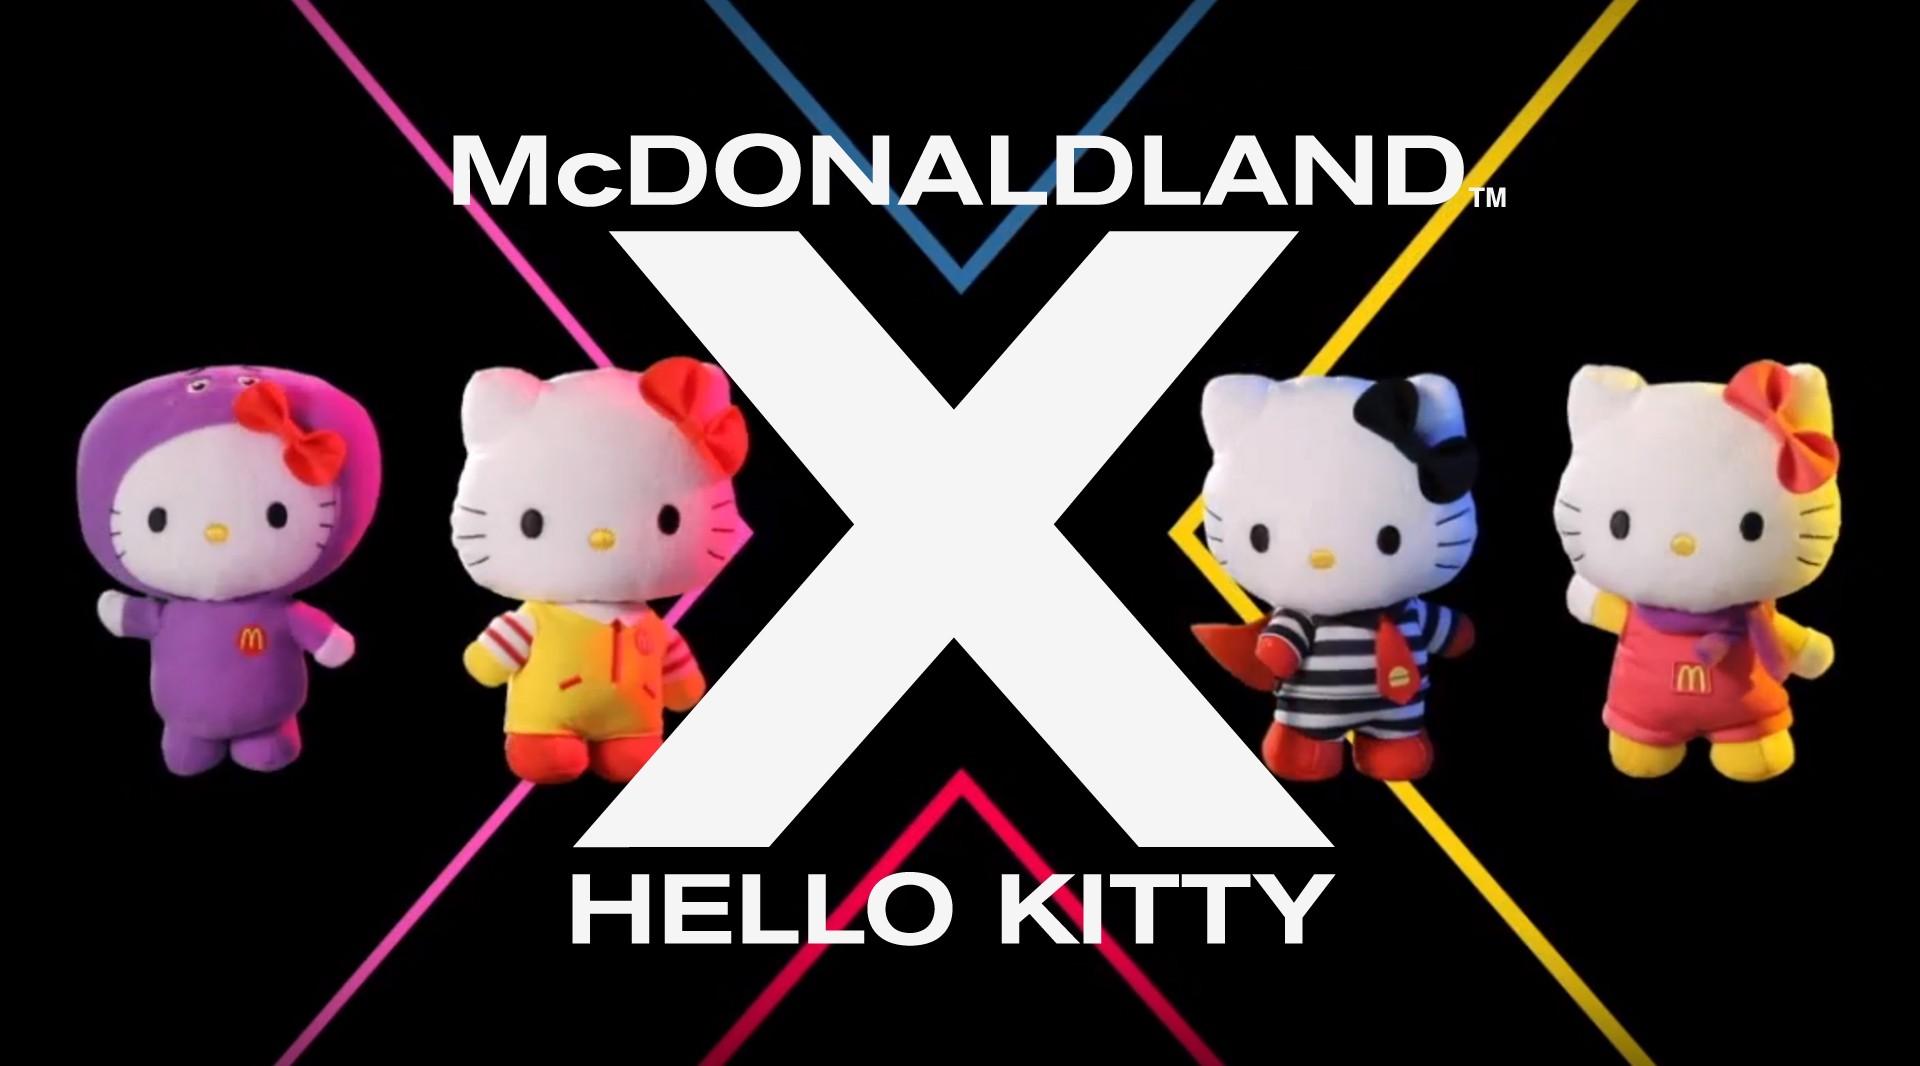 “McDonaldland X Hello Kitty” - McDonald’s